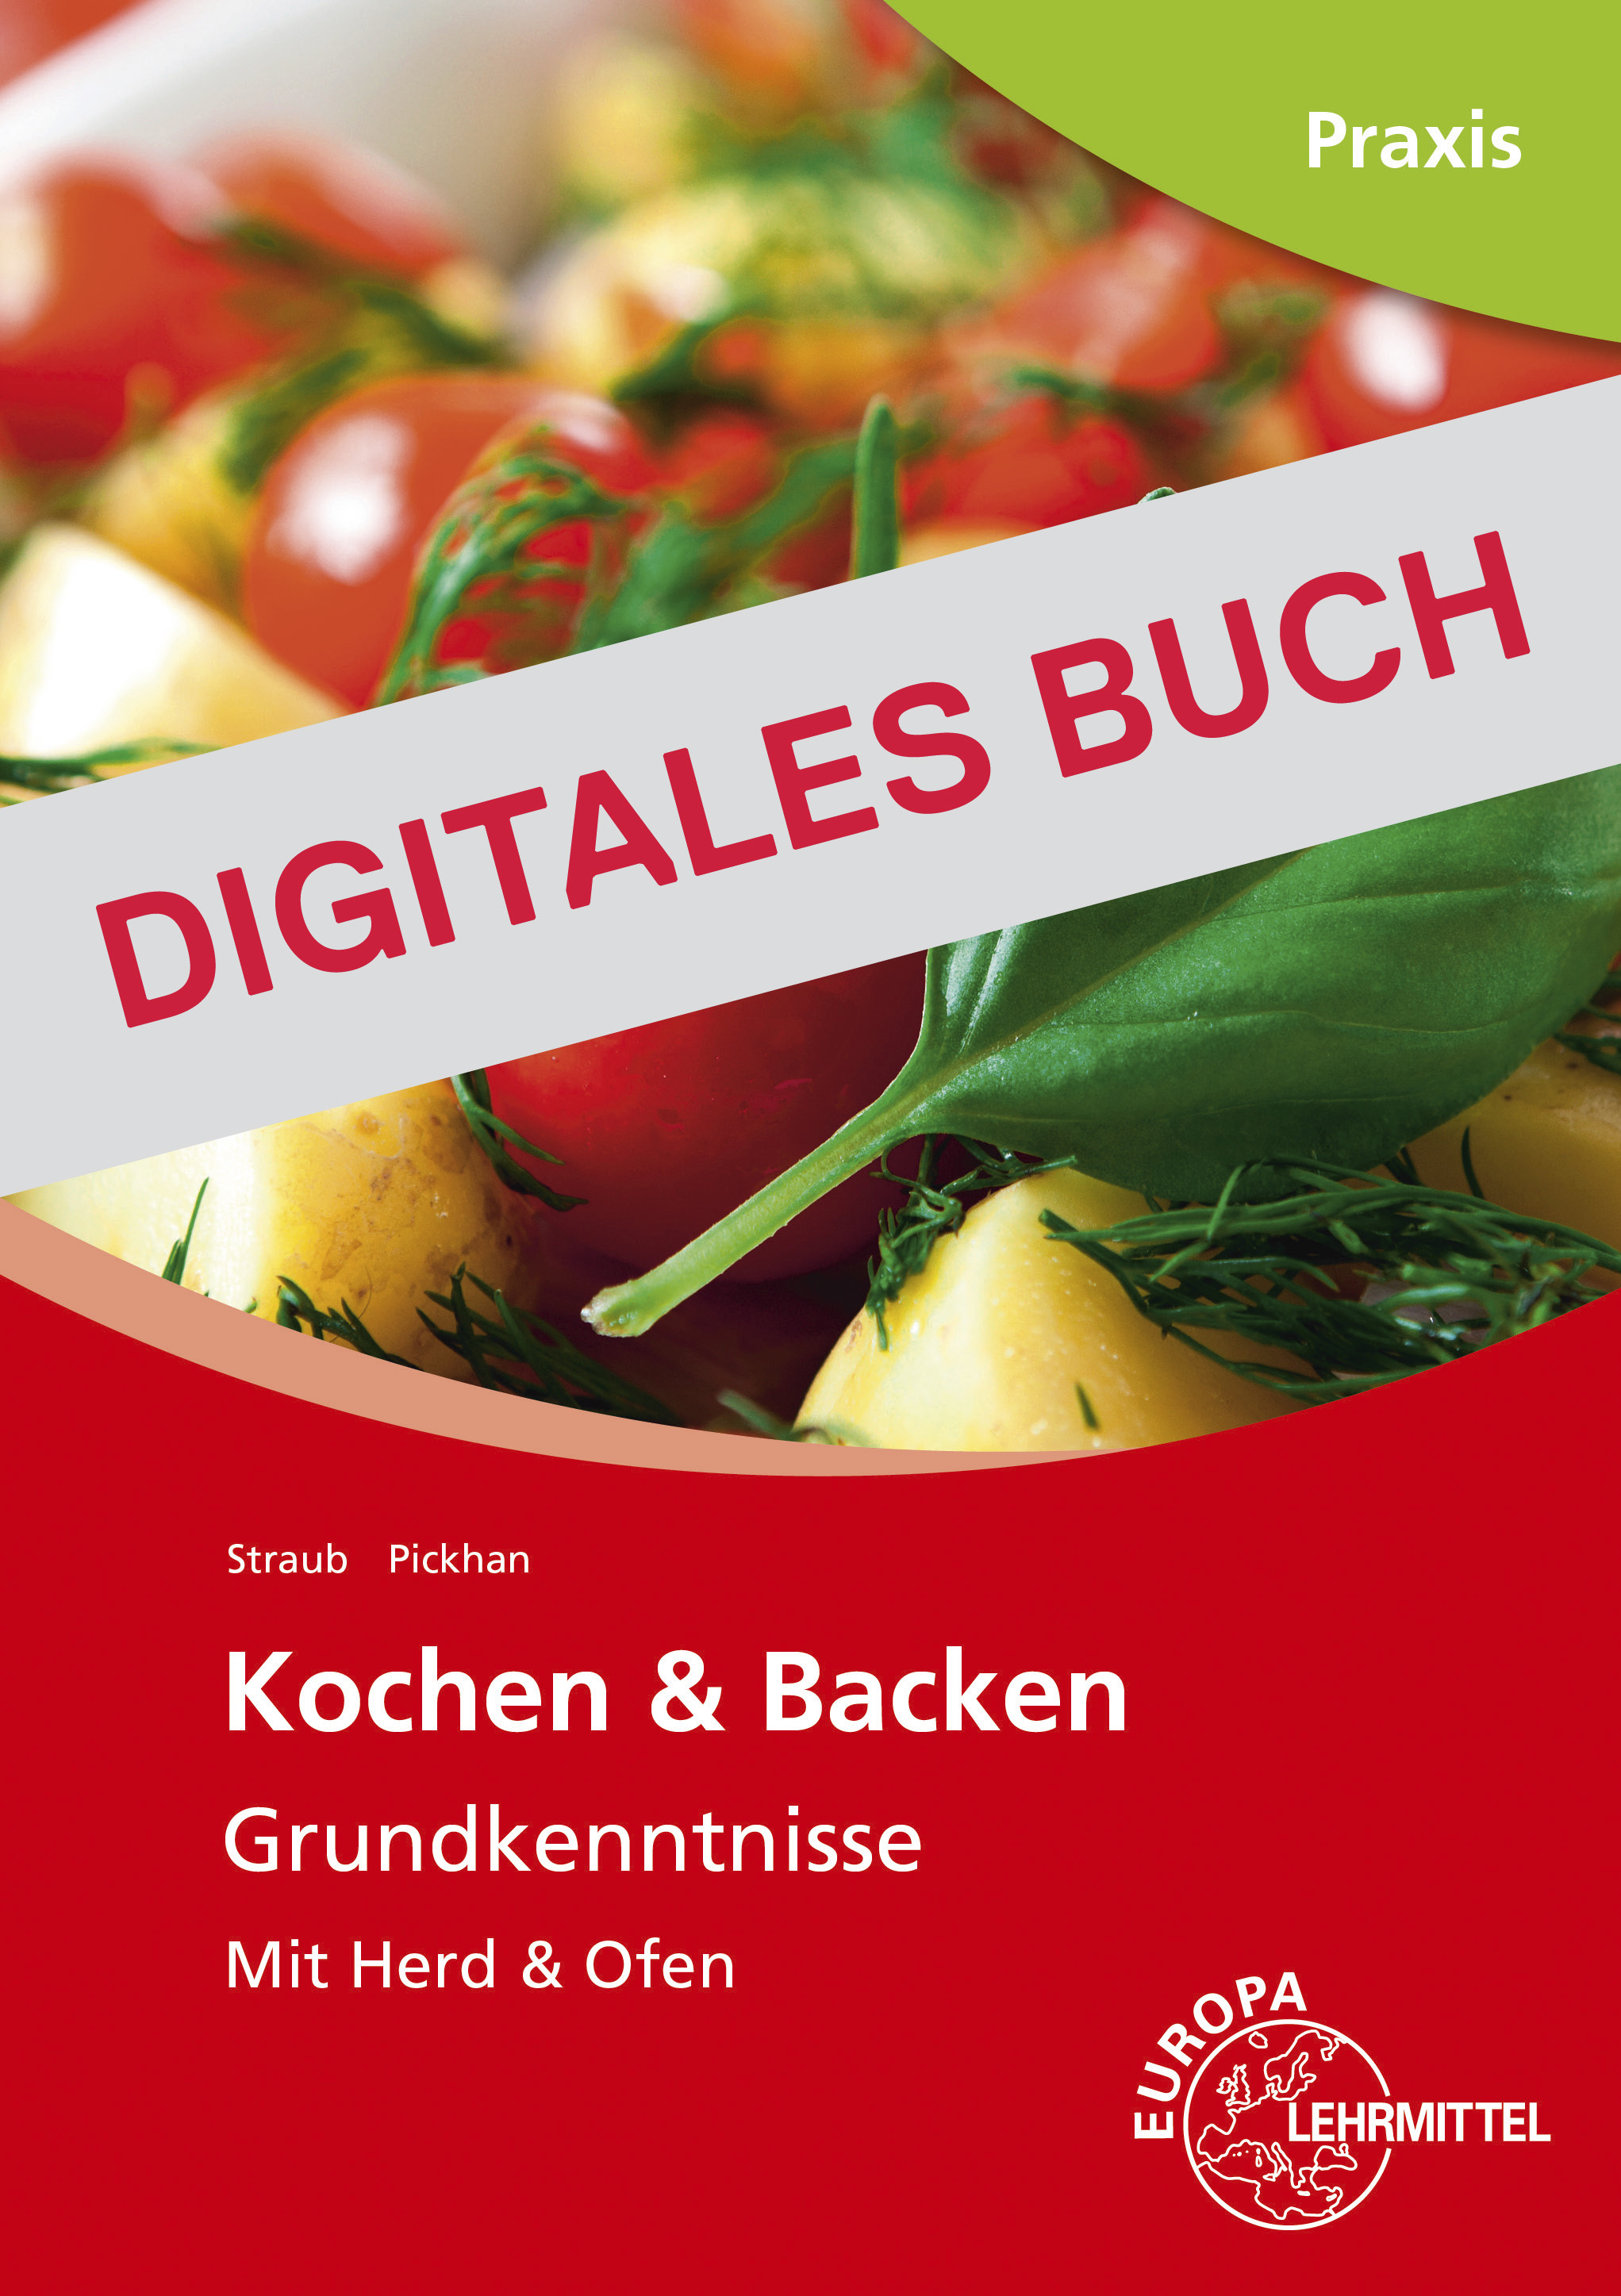 Kochen & Backen Grundkenntnisse - Mit Herd und Ofen - Digitales Buch